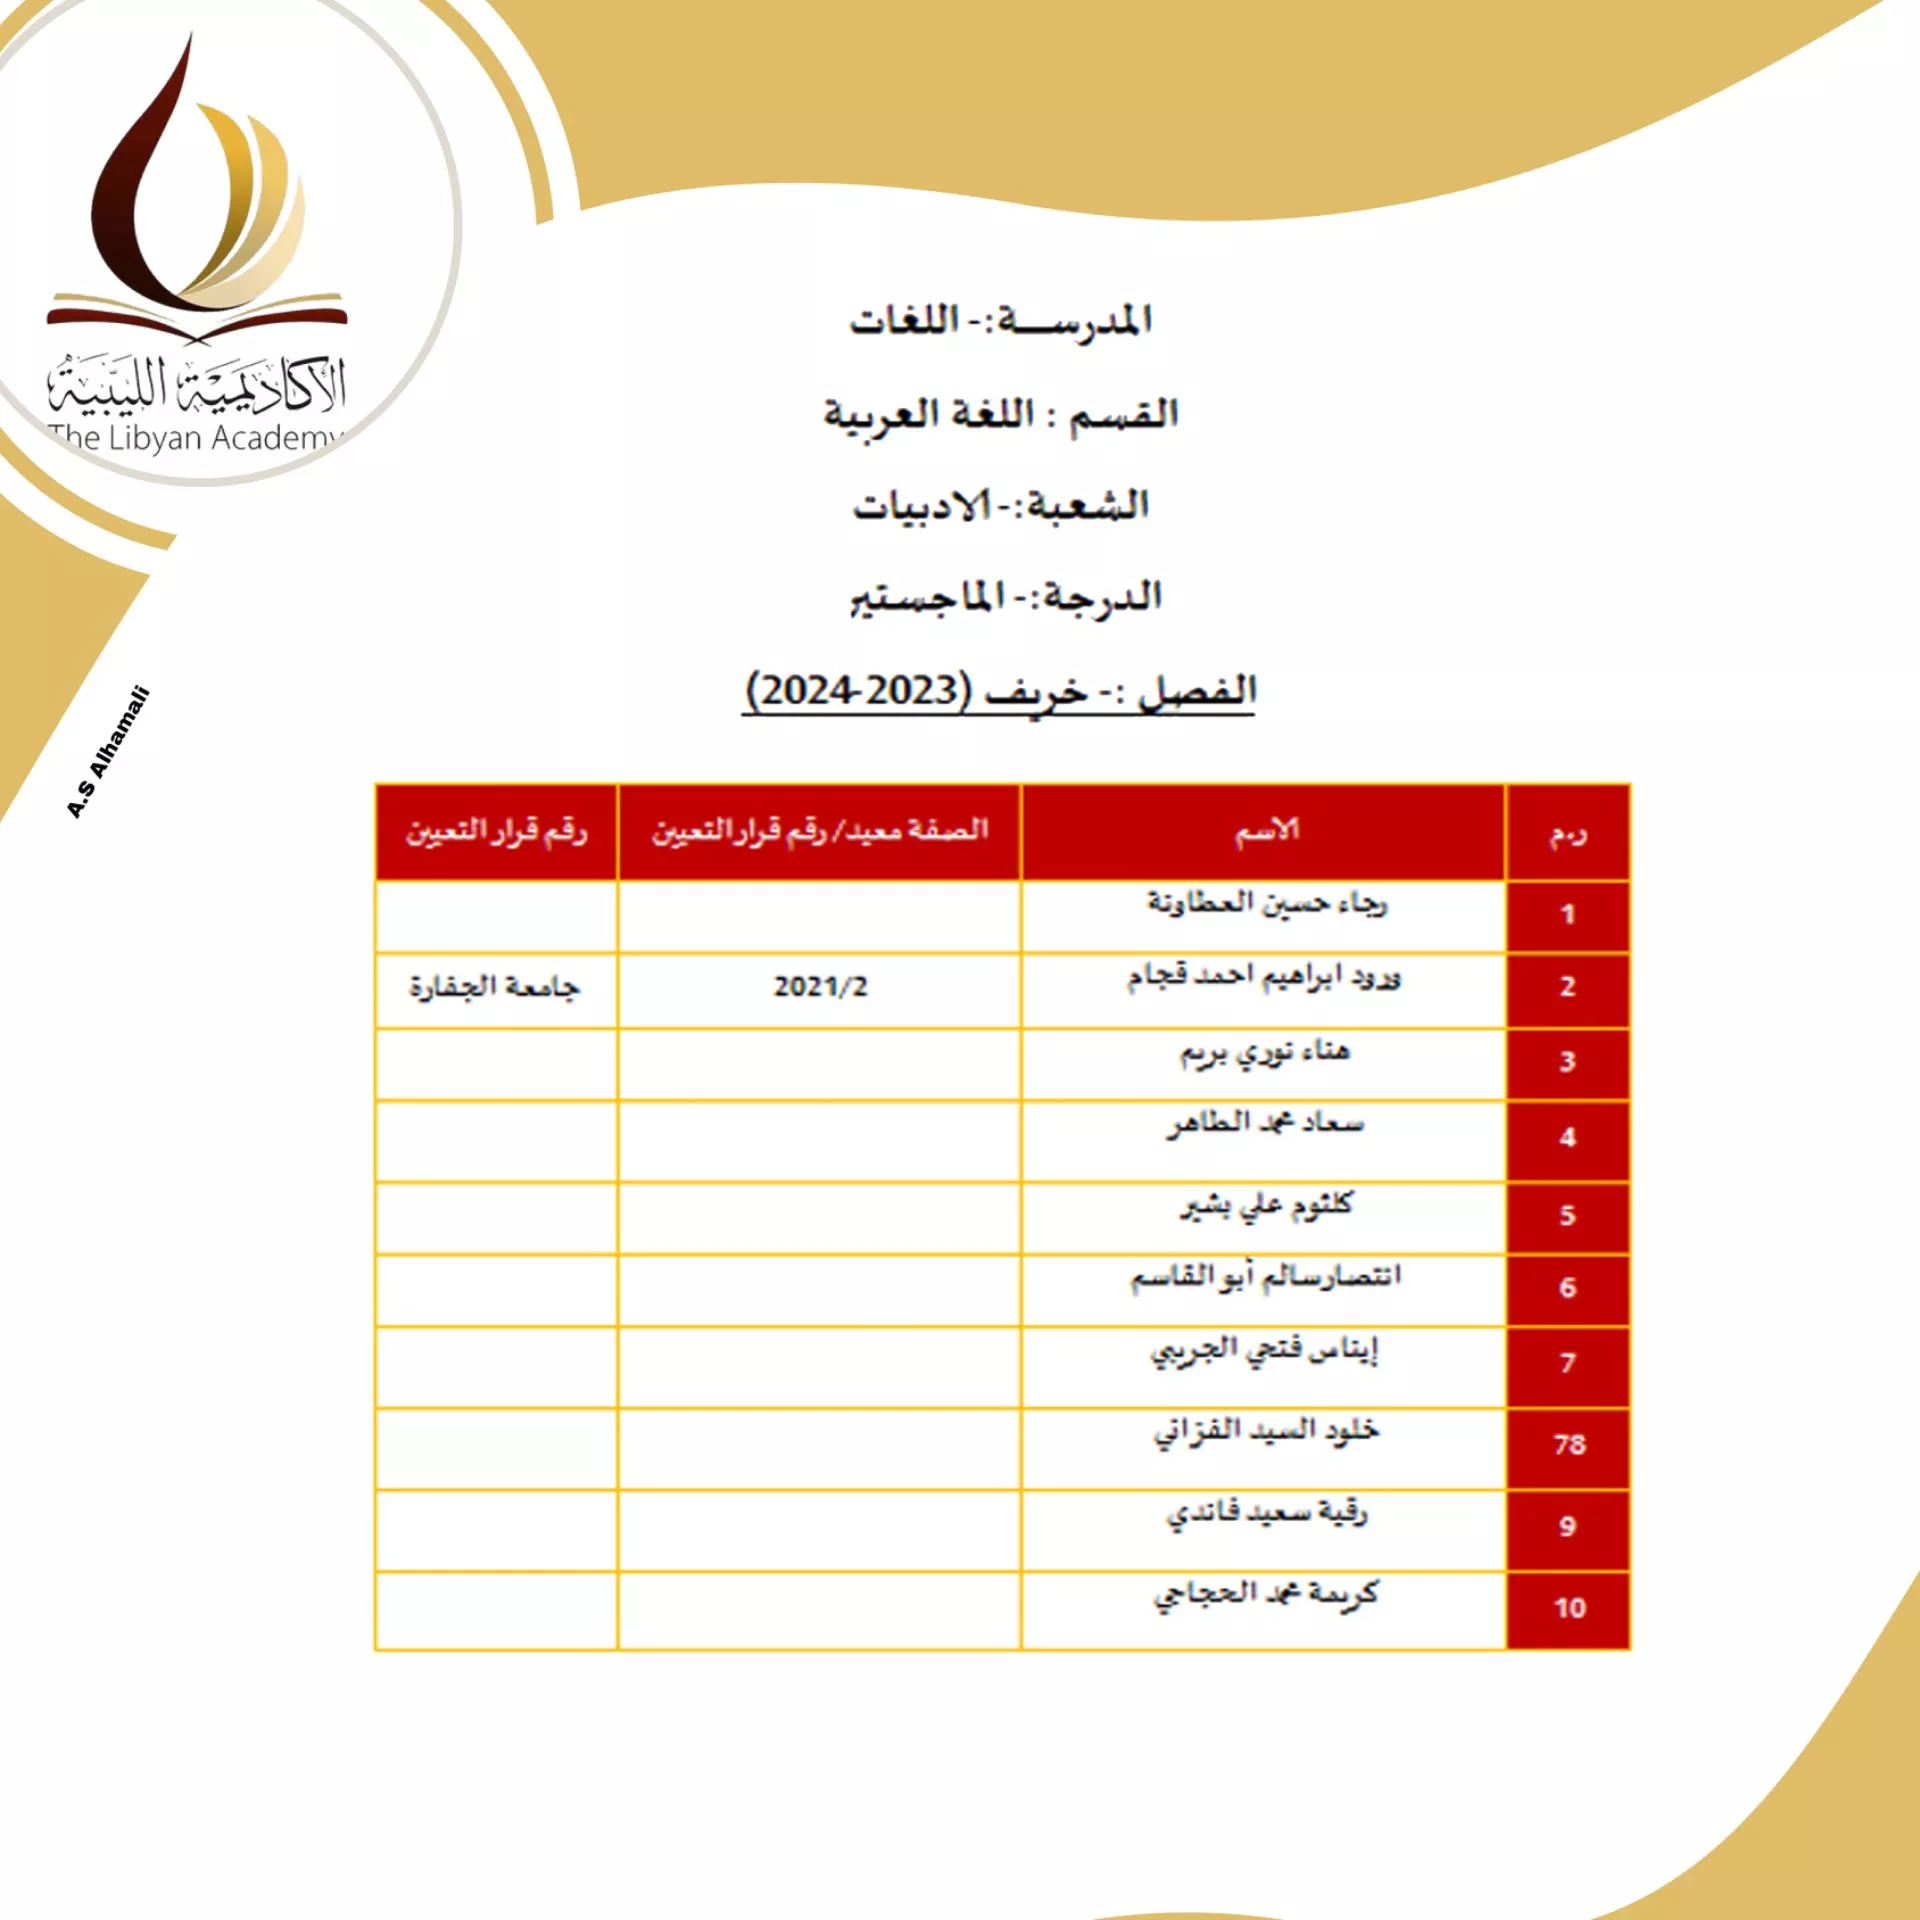 نتائج امتحانات المفاضلة للمتقدمين لدراسة الماجستير بالأكاديمية الليبية للدراسات العليا لمدرسة اللغات للفصل الدراسي خريف 2023/ 2024